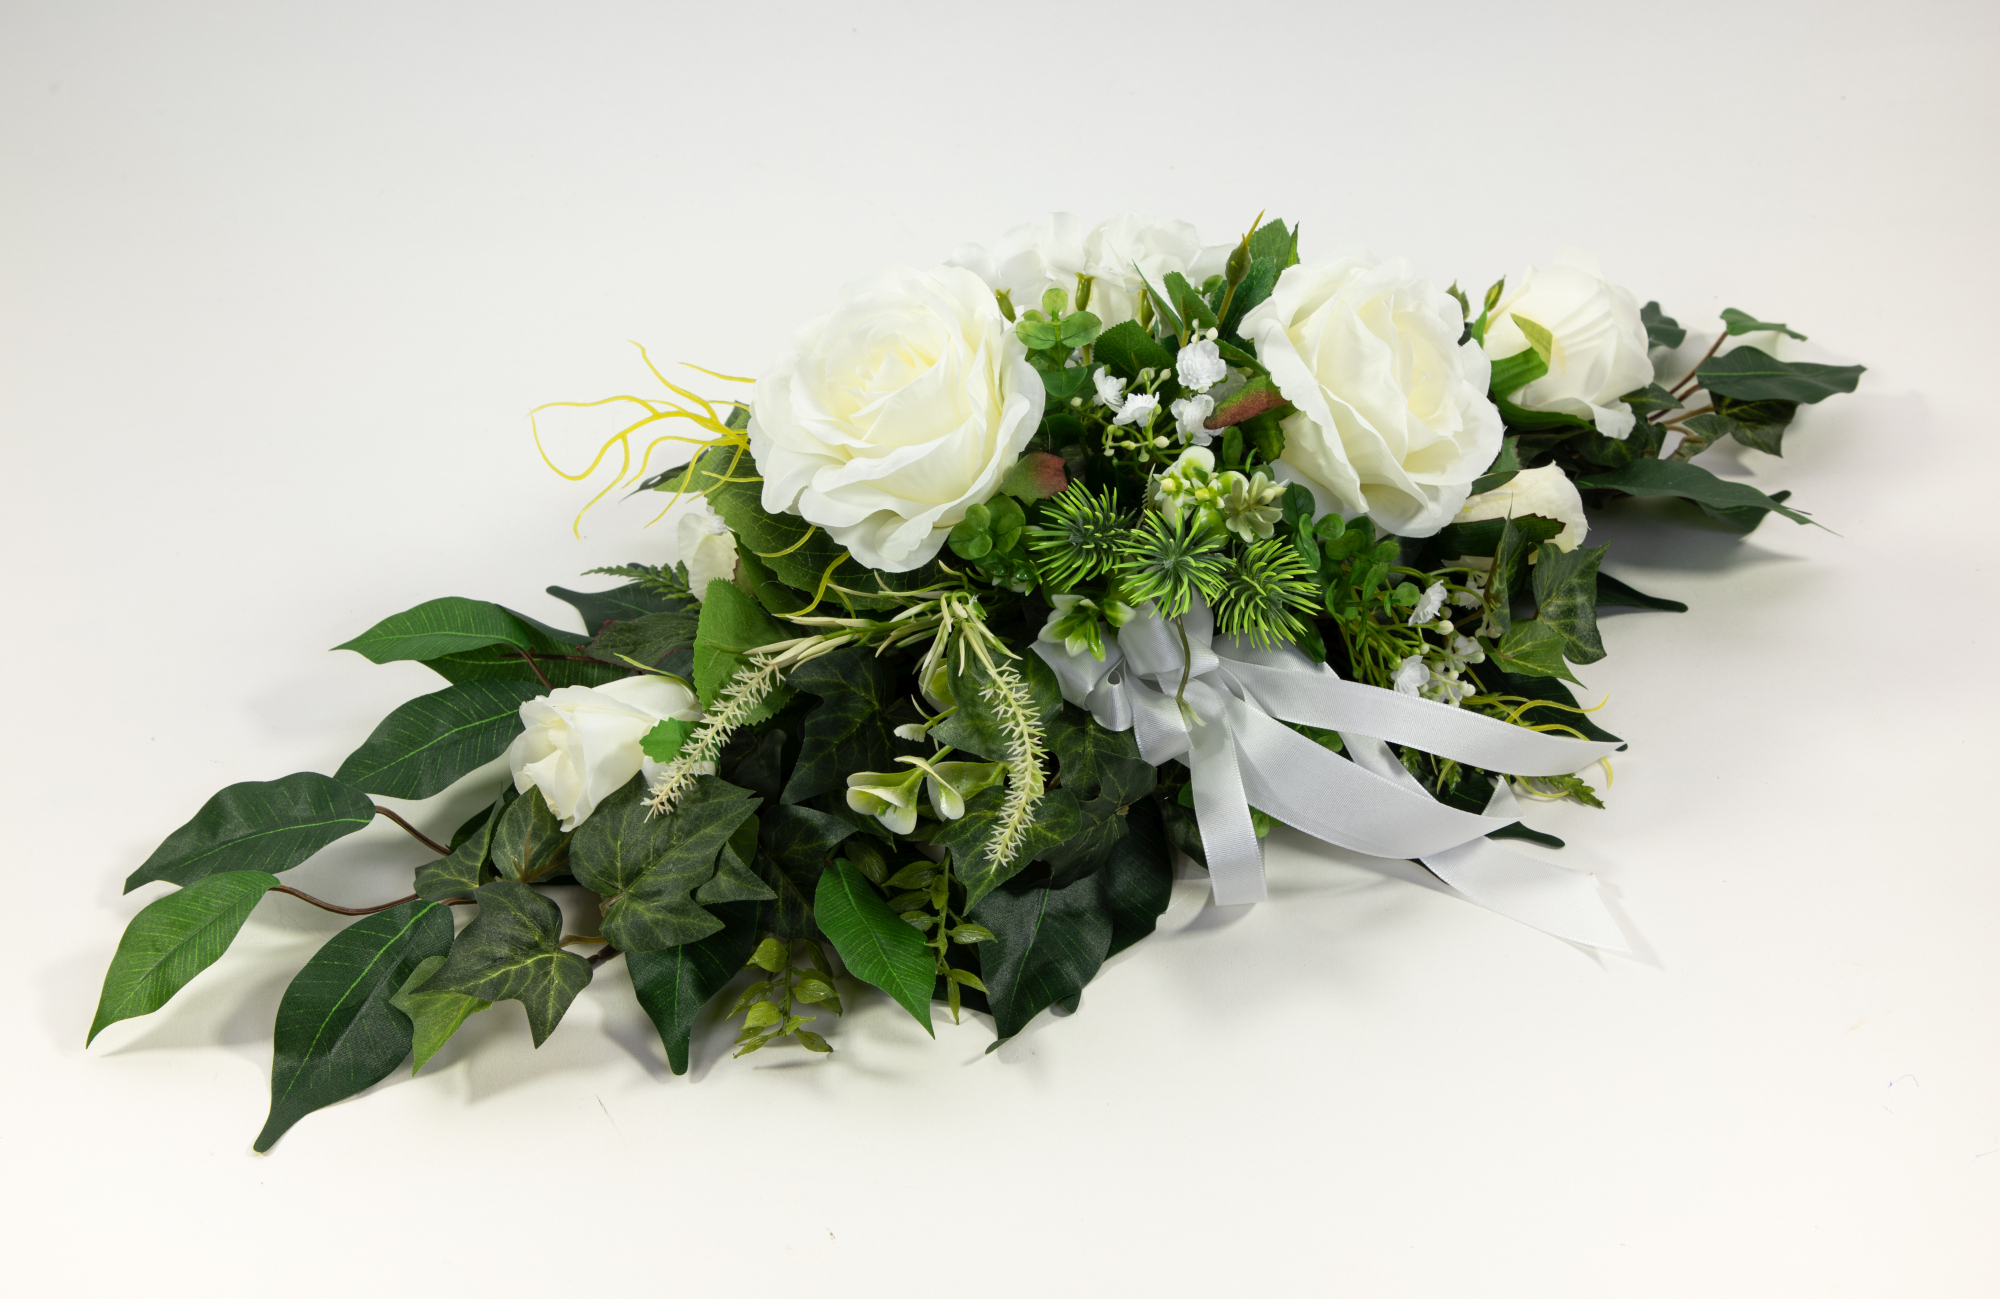 Tischgesteck länglich 60cm weiß-creme mit Rosen und Hortensien Kunstblumen künstliche Blumen